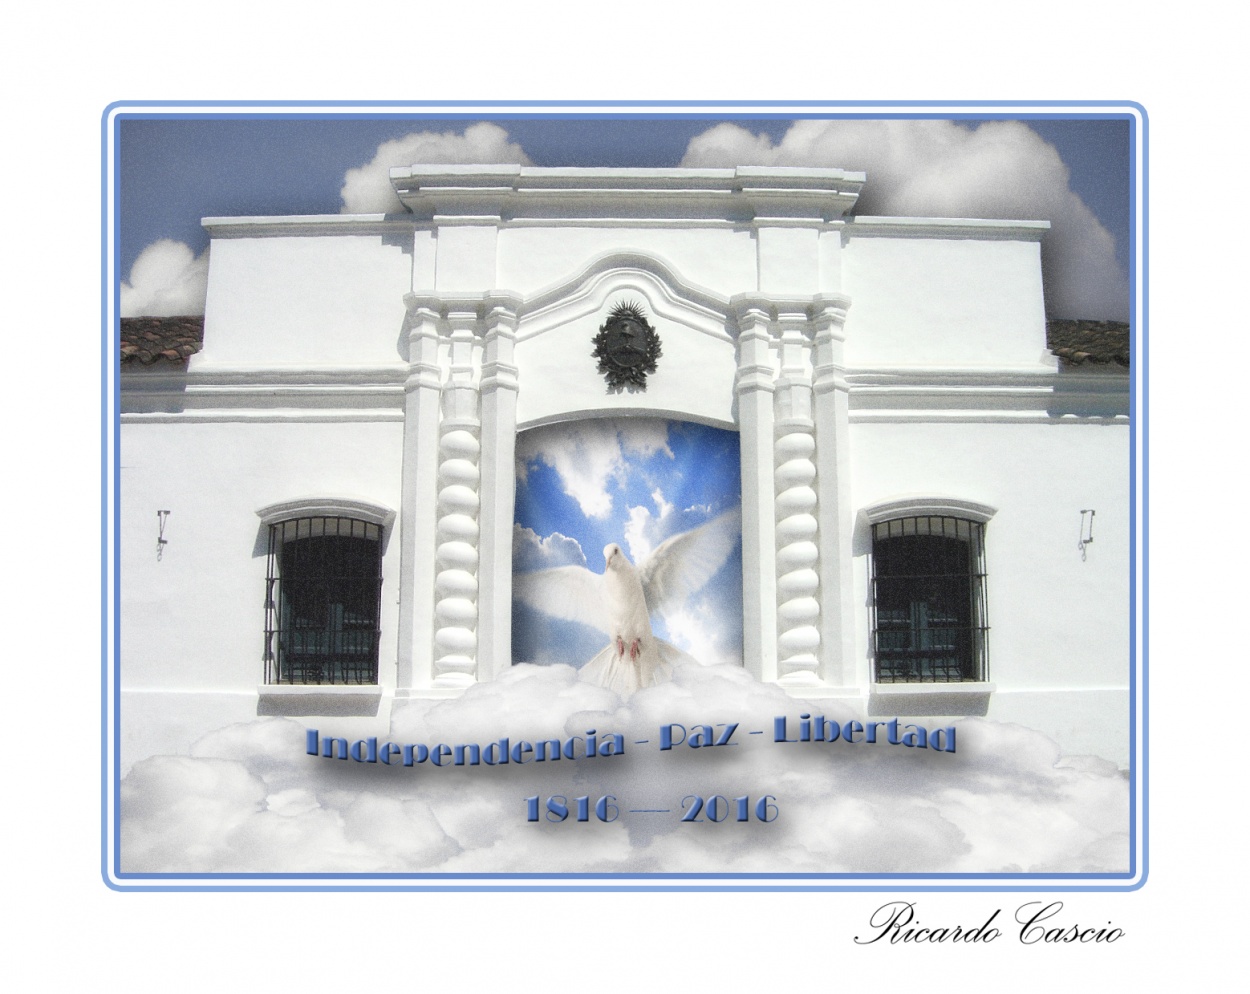 "Bicentenario" de Ricardo Cascio